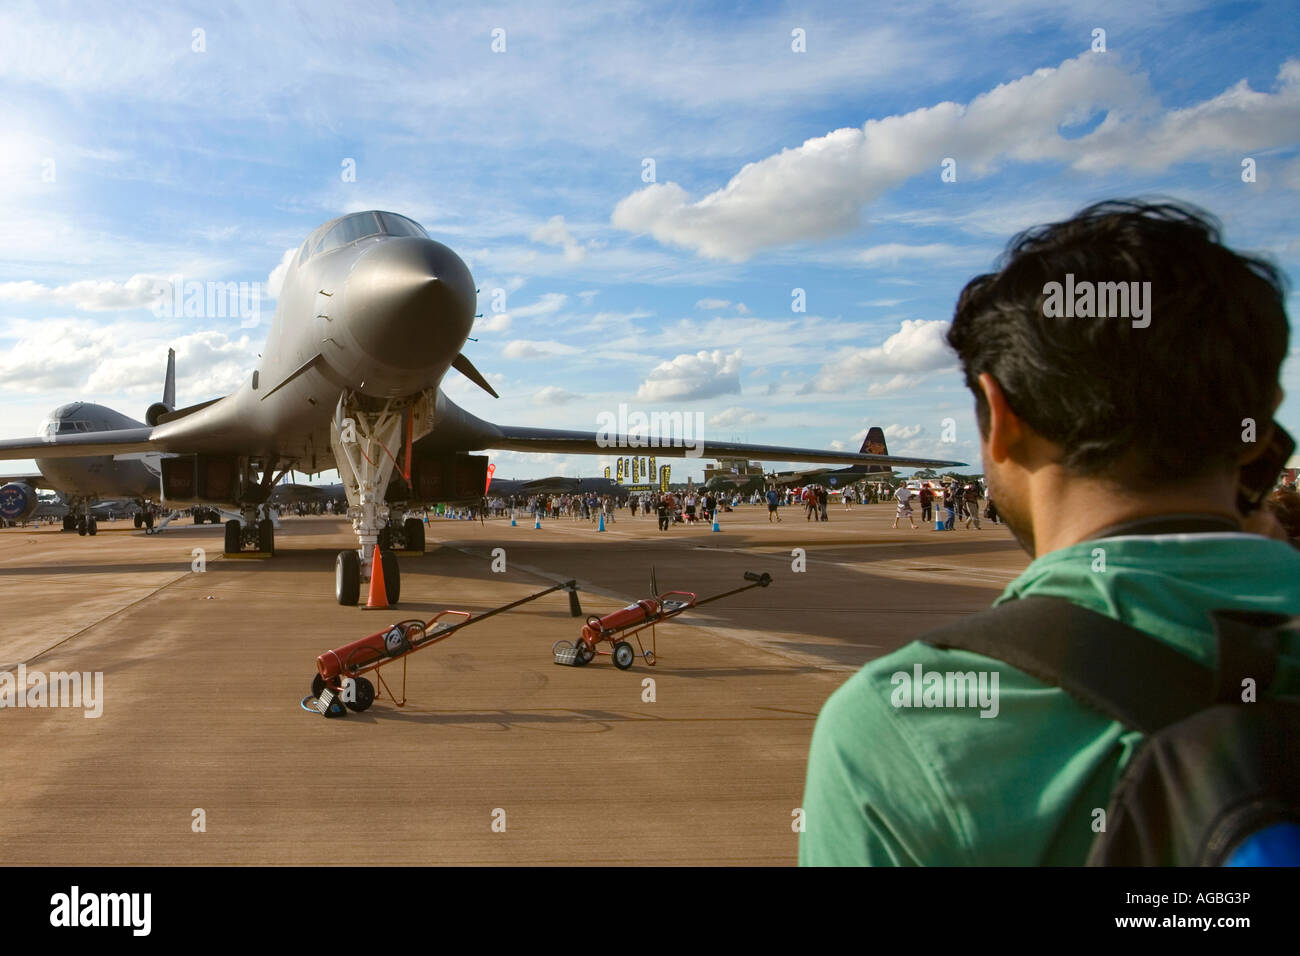 USAF Airforce B1-B Lancer Bomber Flugzeug abgestellt in Sonnenschein, blauen Himmel, während jungen asiatischer Mann im grünen T-shirt sieht auf Stockfoto